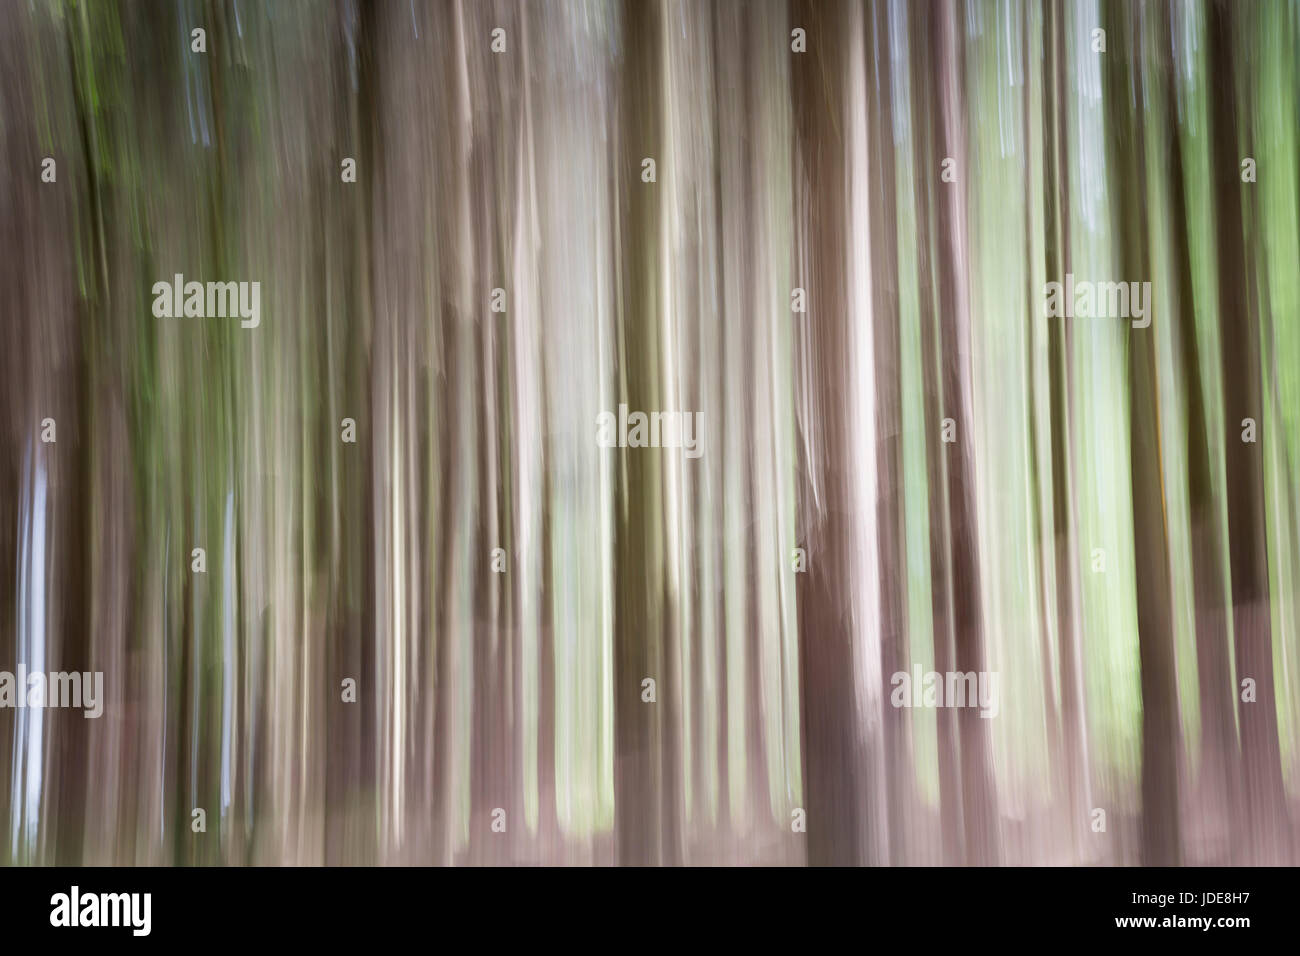 Wildwood, abstrakte Wälder Hintergrund Techniken in der Kamera Stockfoto